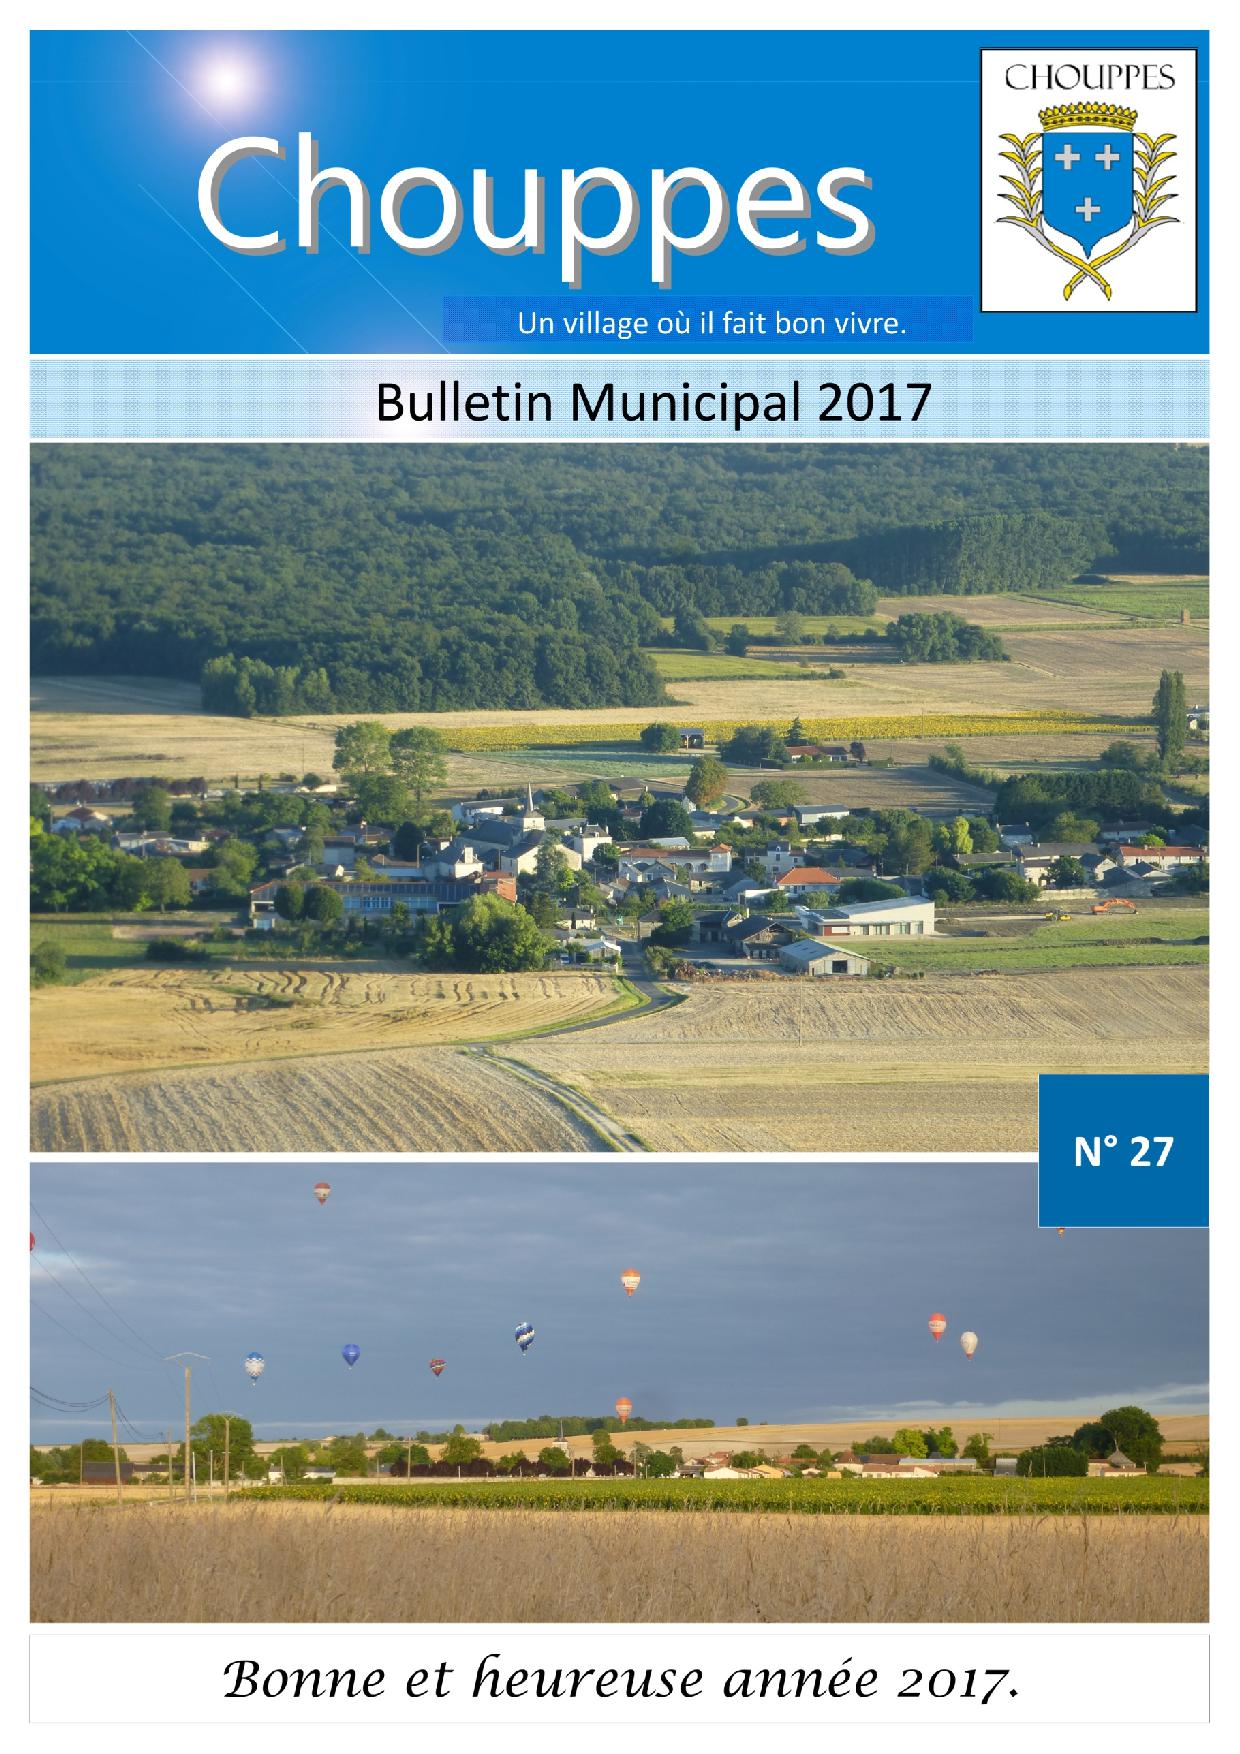 1ere-bulletin-2017